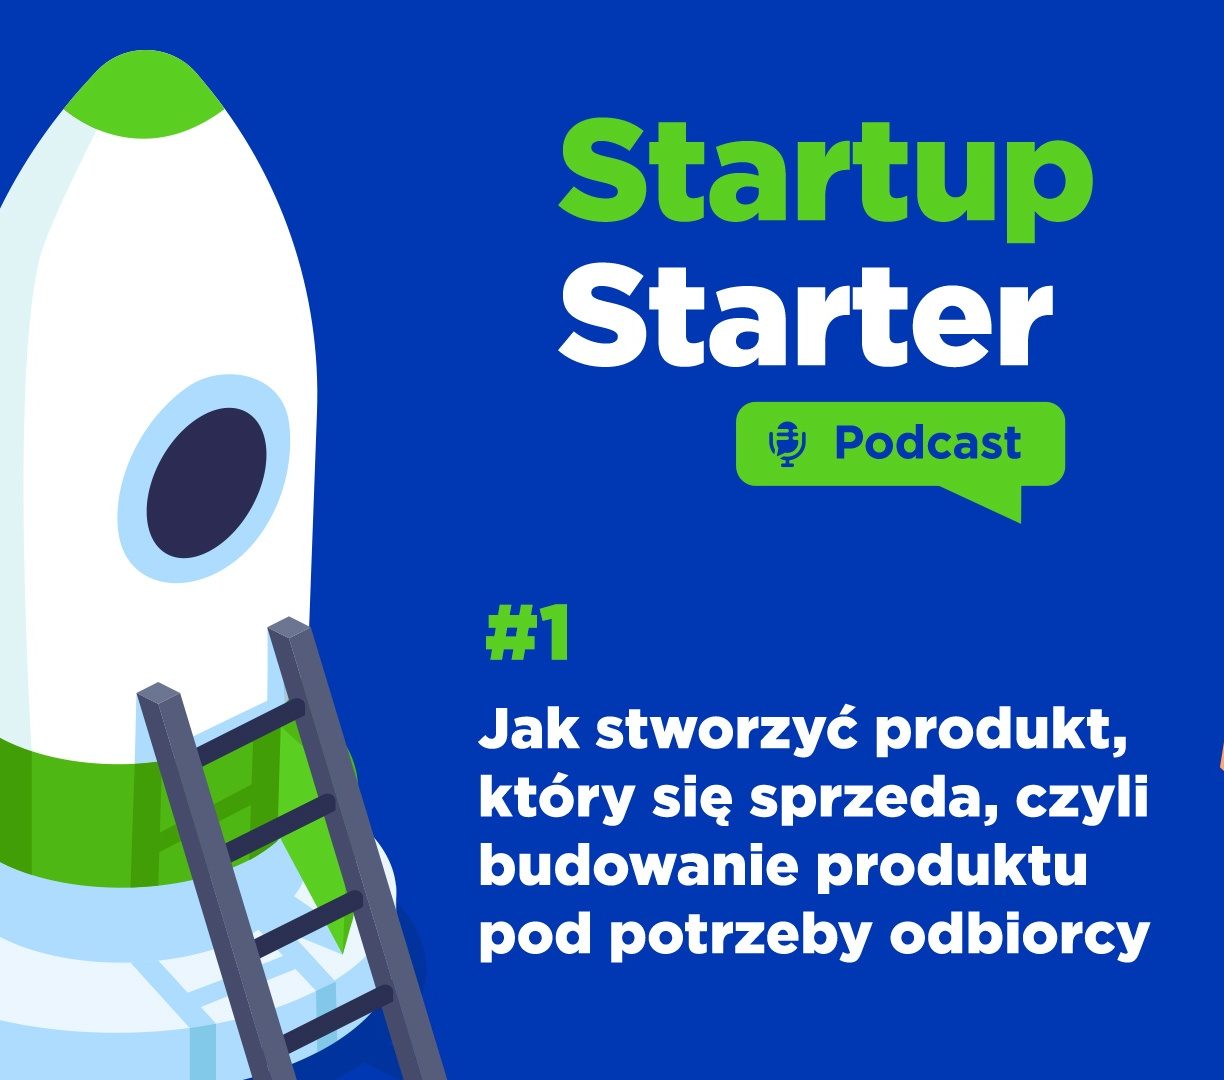 Startup Starter - Podcast #1 - Jak stworzyć produkt, który się sprzeda, czyli budowanie produktu pod potrzeby odbiorcy